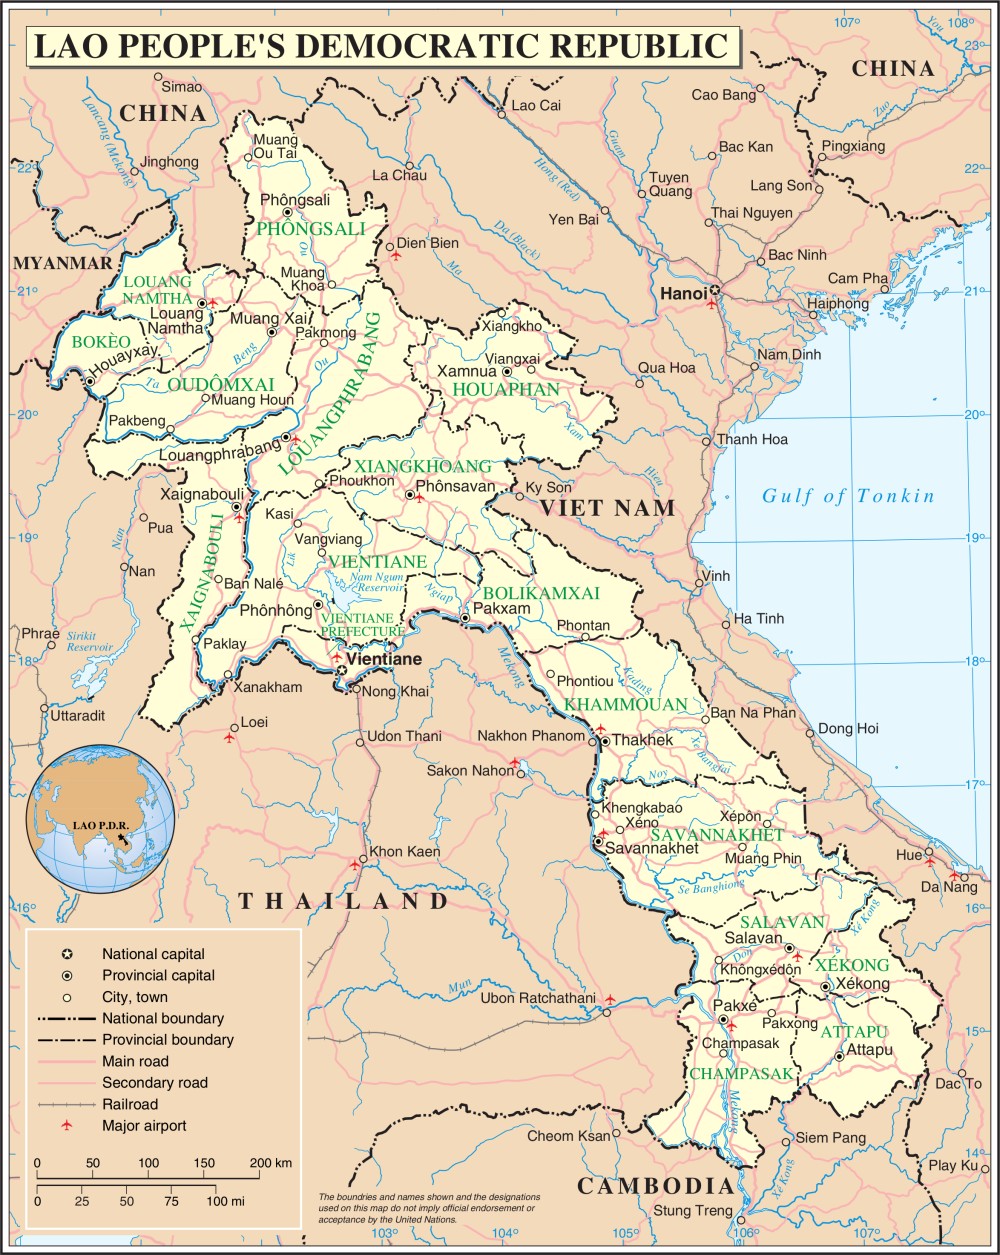 Bản đồ đất nước Lào rất thu hút với những người yêu thích khám phá, trải nghiệm và tìm hiểu về văn hóa các dân tộc. Với những thắng cảnh đặc sắc và là nơi giao thoa của đa dạng những nền văn hóa khác nhau, đất nước này sẽ mang lại cho bạn nhiều trải nghiệm tuyệt vời khi đến thăm.